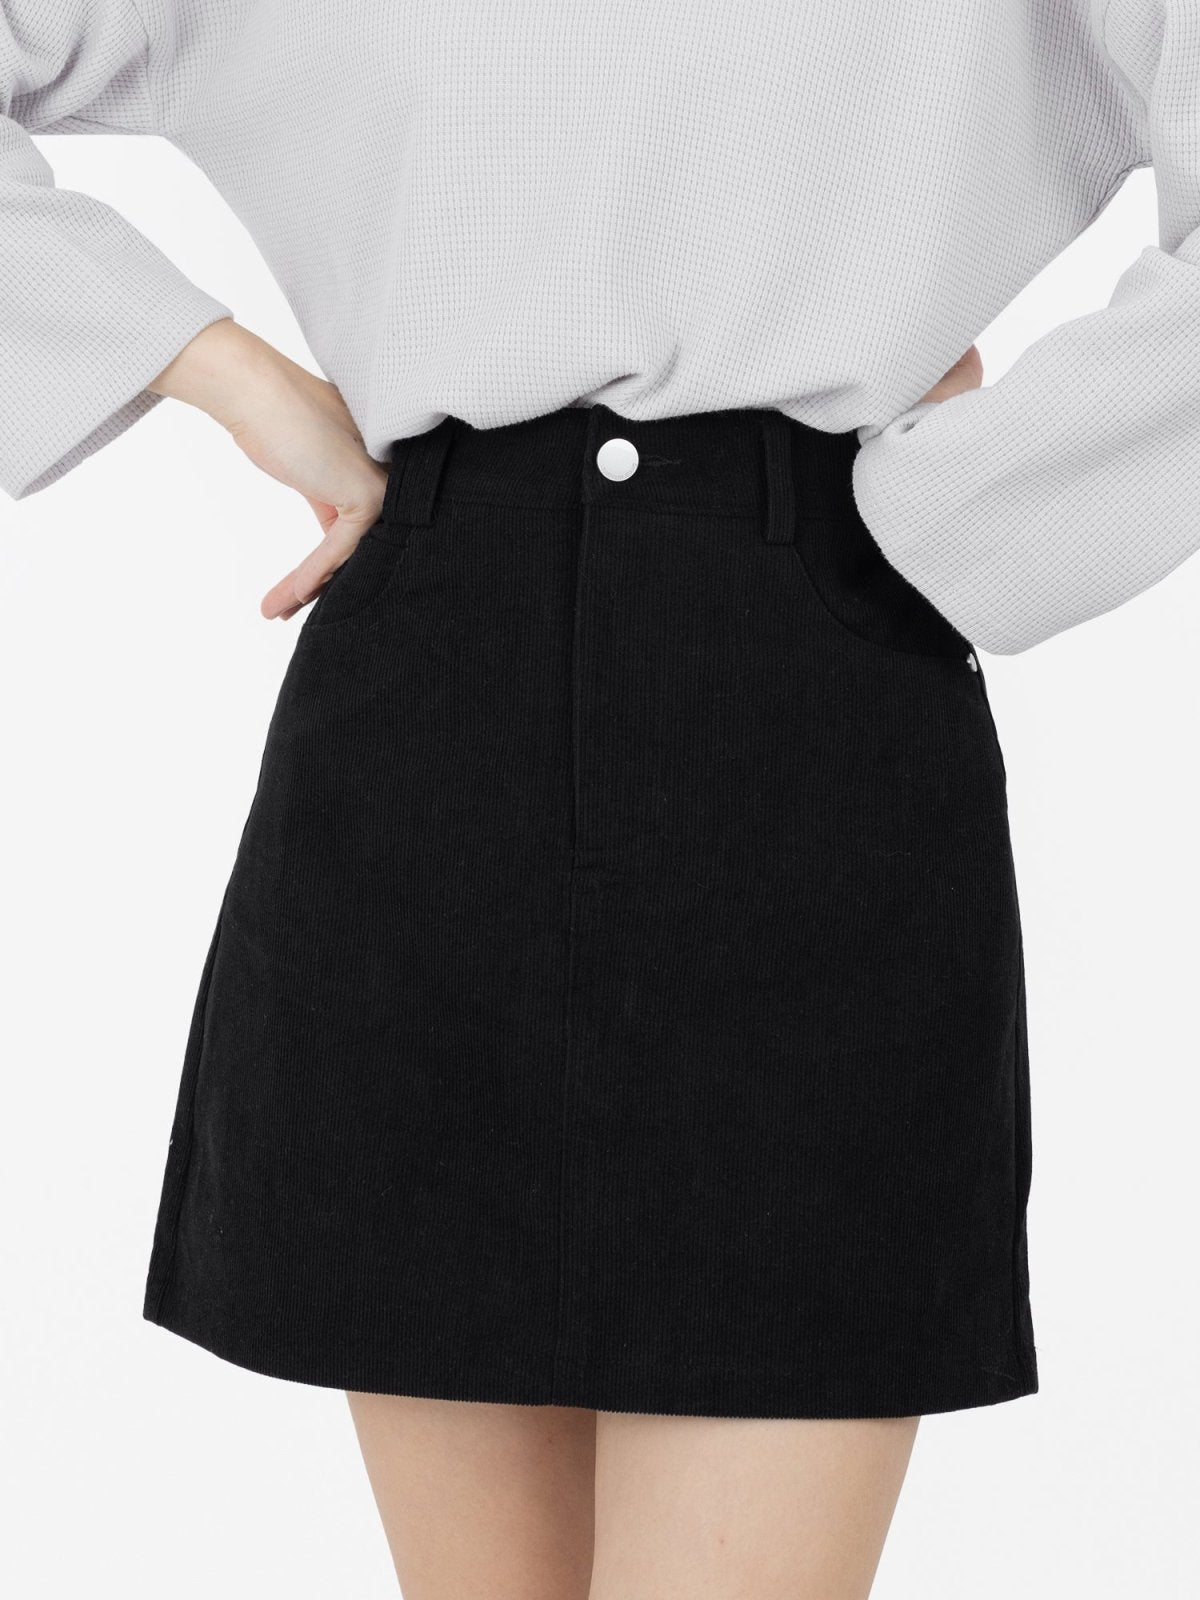 Reese Corduroy Mini Skirt - DAG-G-9854-22SesameBlackS - Black - S - D'ZAGE Designs